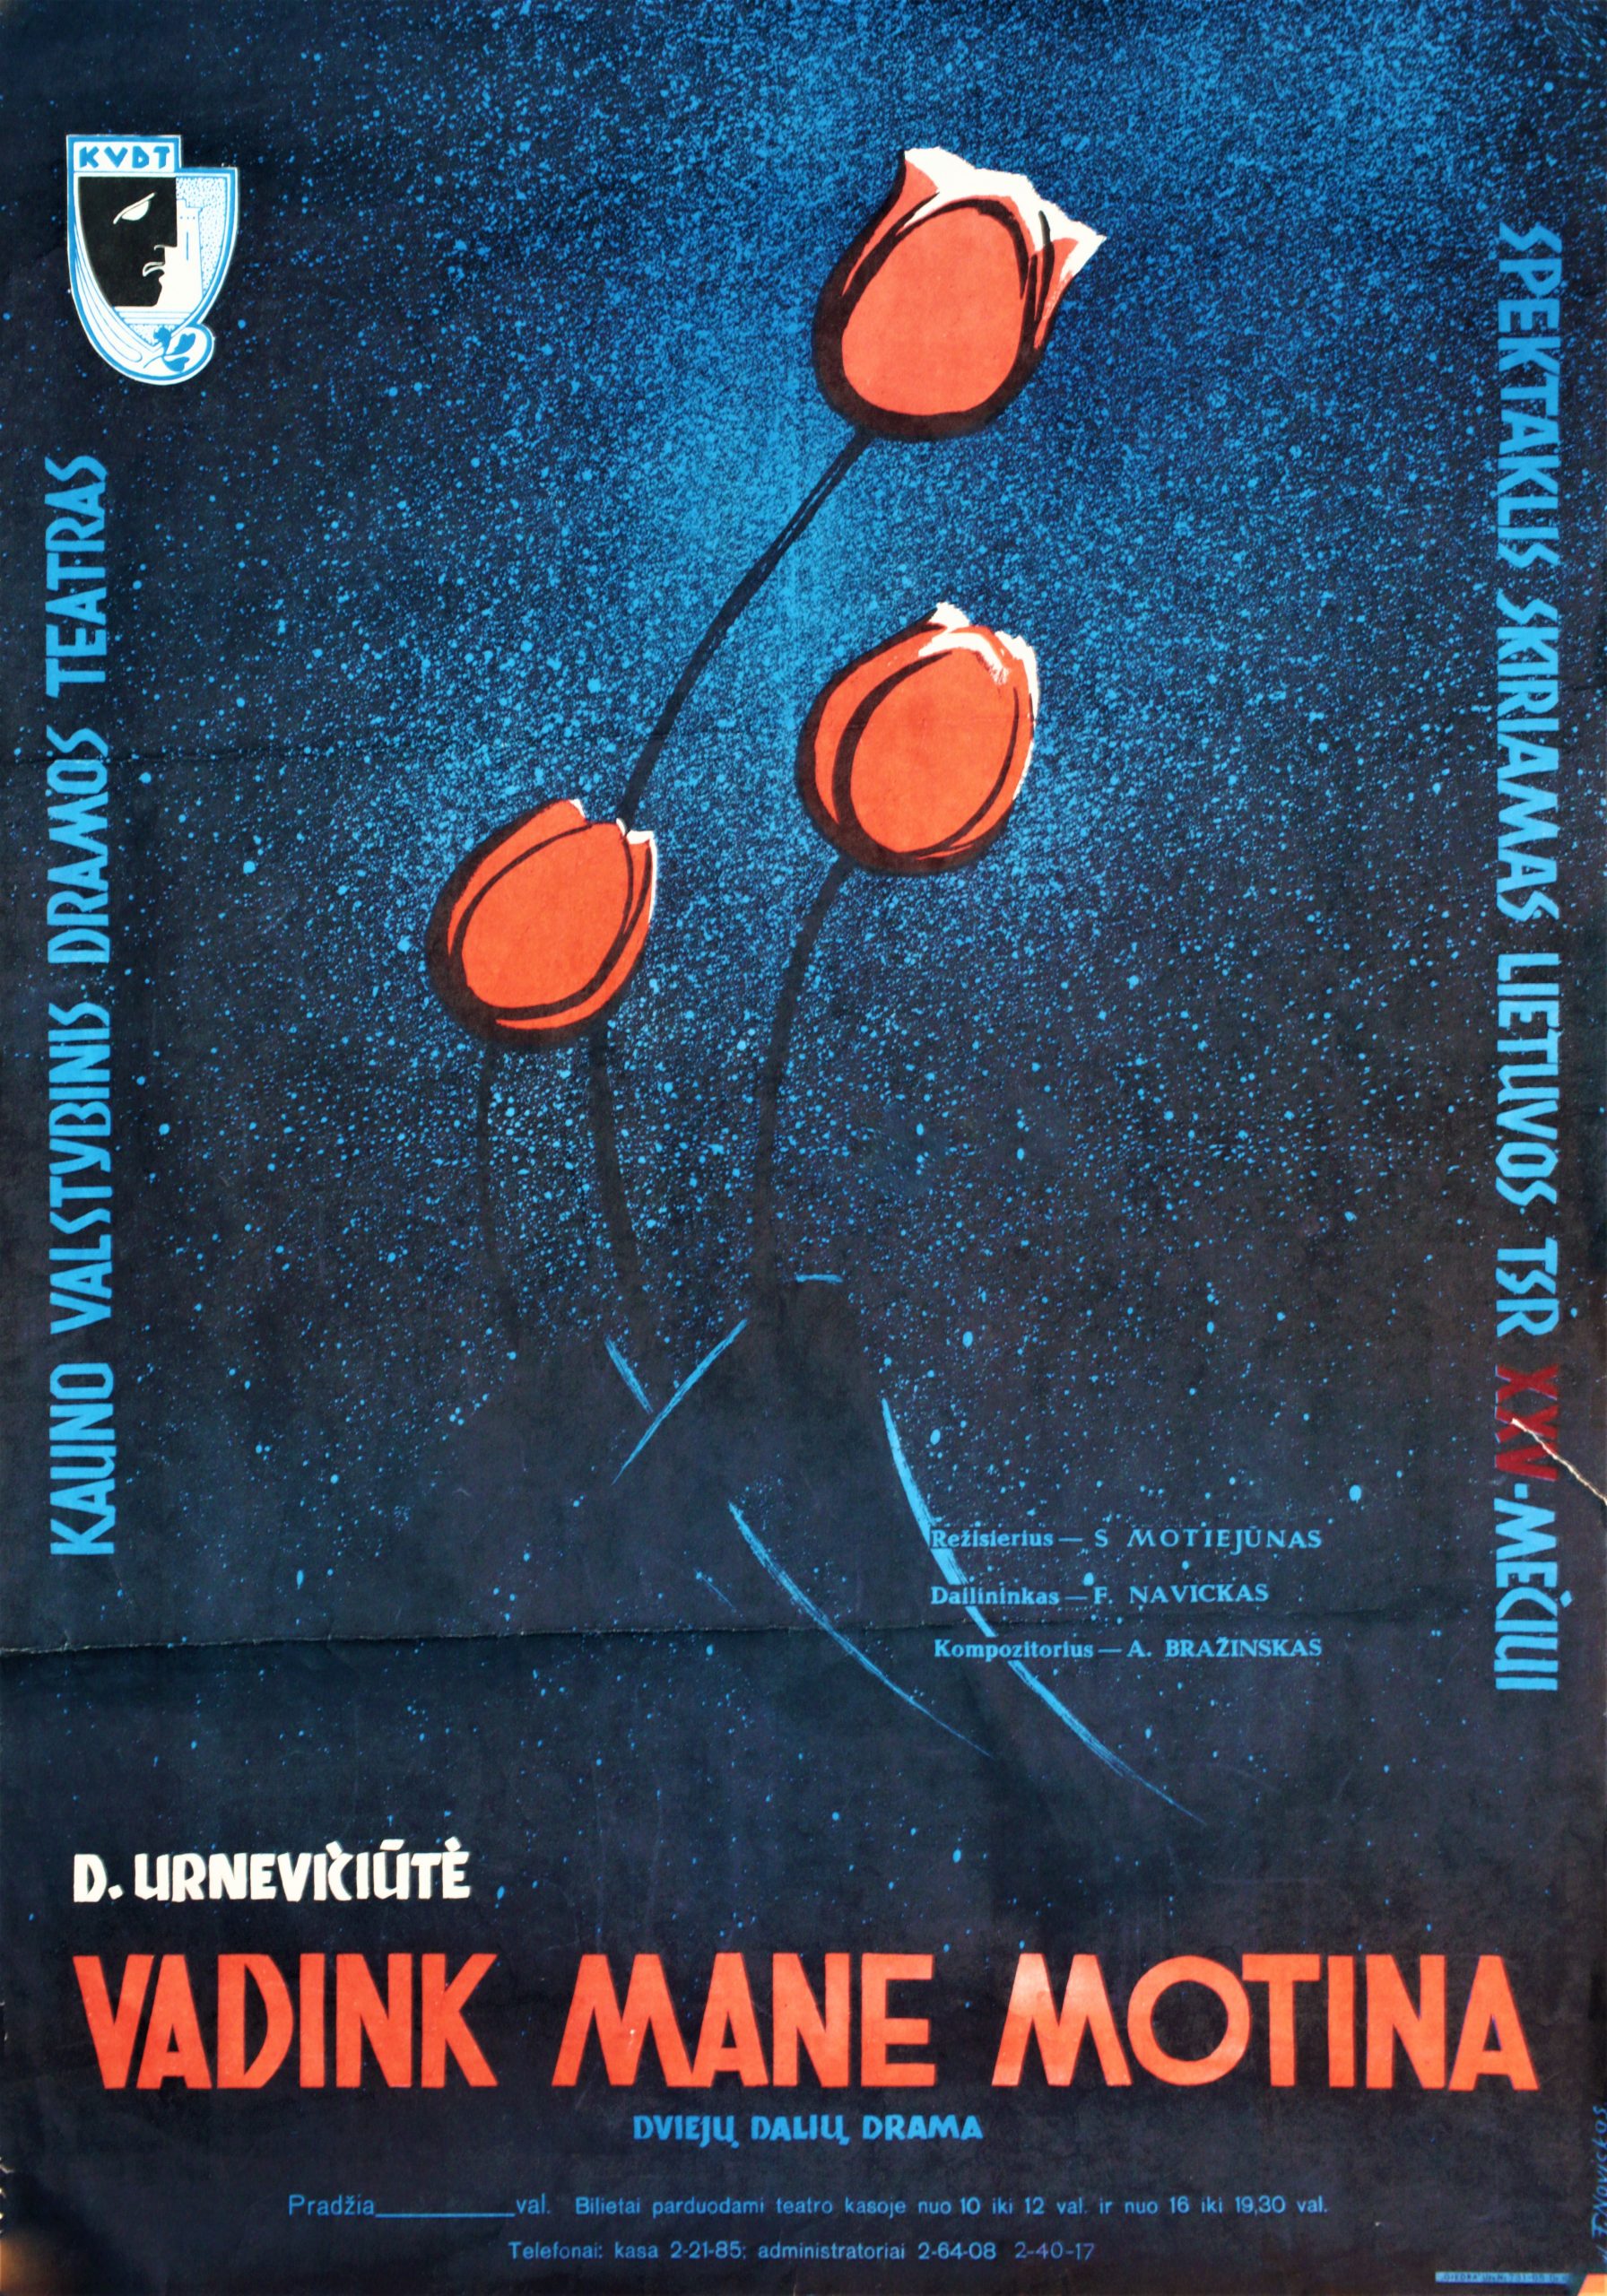 D. Urnevičiūtė „Vaidink mane motina“, režisierius S. Motiejūnas, Kauno valstybinis dramos teatras, plakato dailininkas F. Navickas, 1965 m.